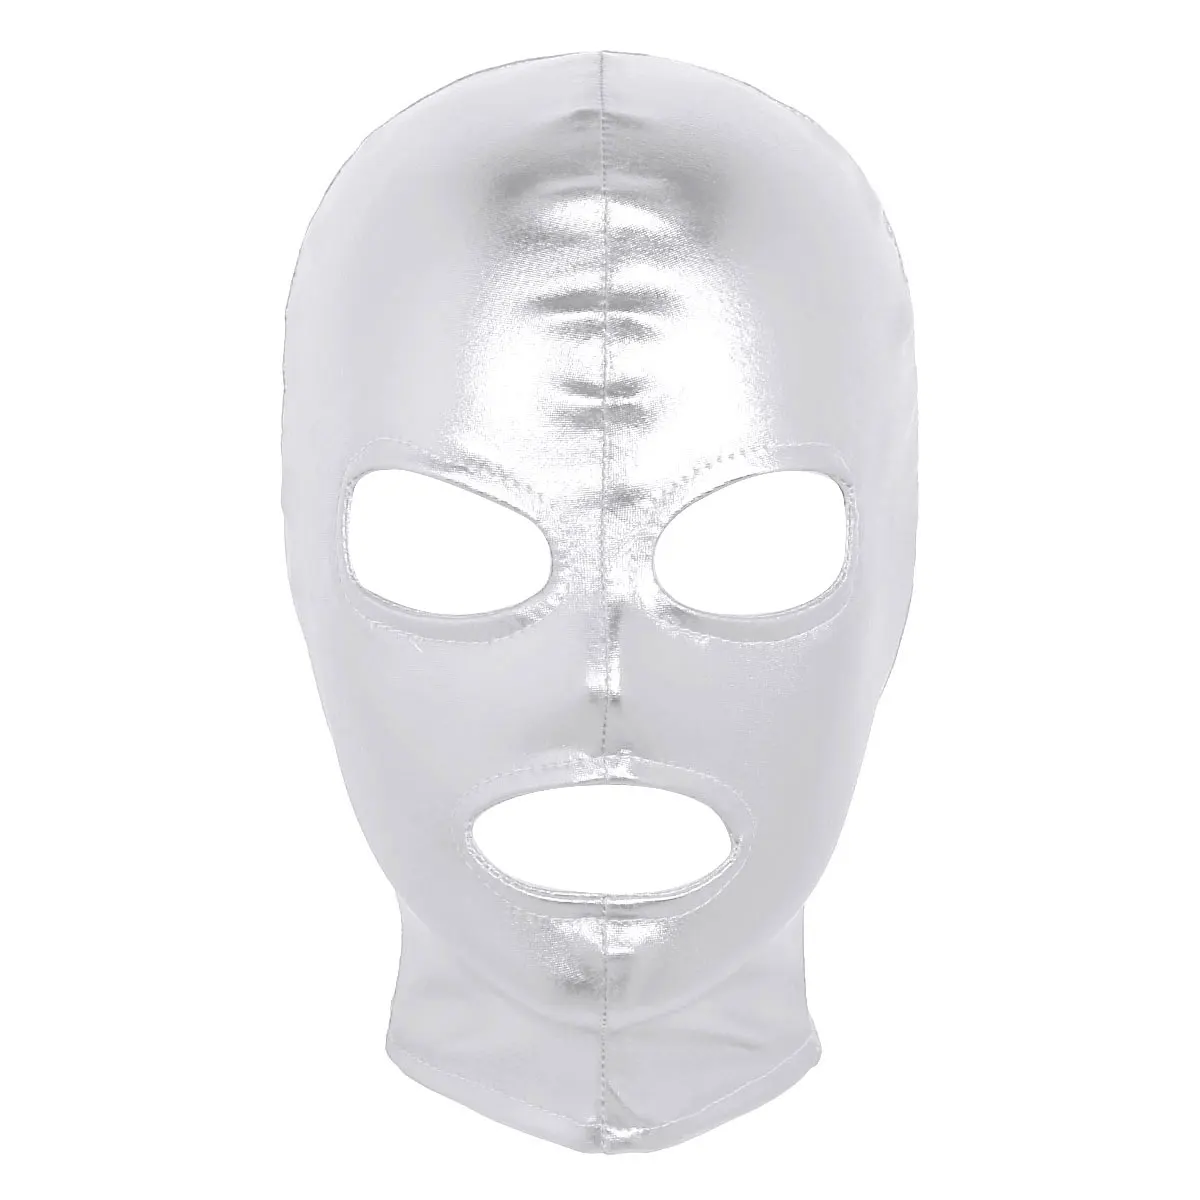 TiaoBug унисекс для женщин и мужчин блестящая латексная маска для ролевых игр полный капюшон головной убор ролевая игра Хэллоуин косплей костюм аксессуары - Цвет: Silver